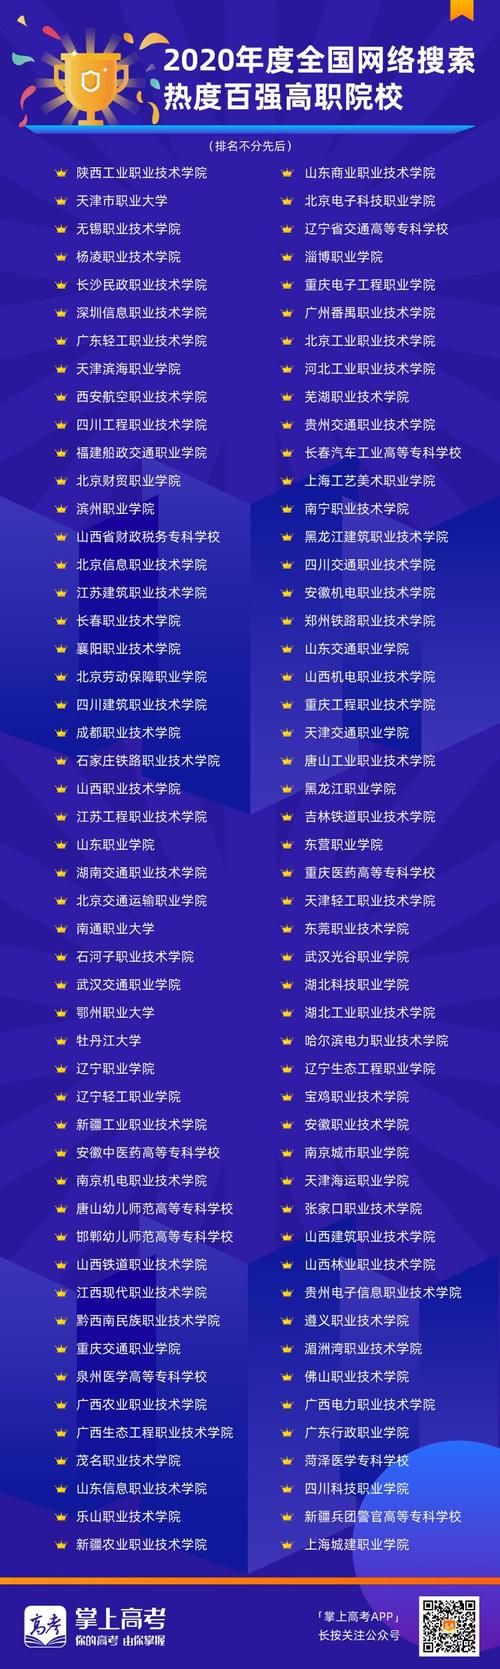 中国教育在线·掌上高考“榜样力量-2020年度教育盛典”评选获奖名单公布